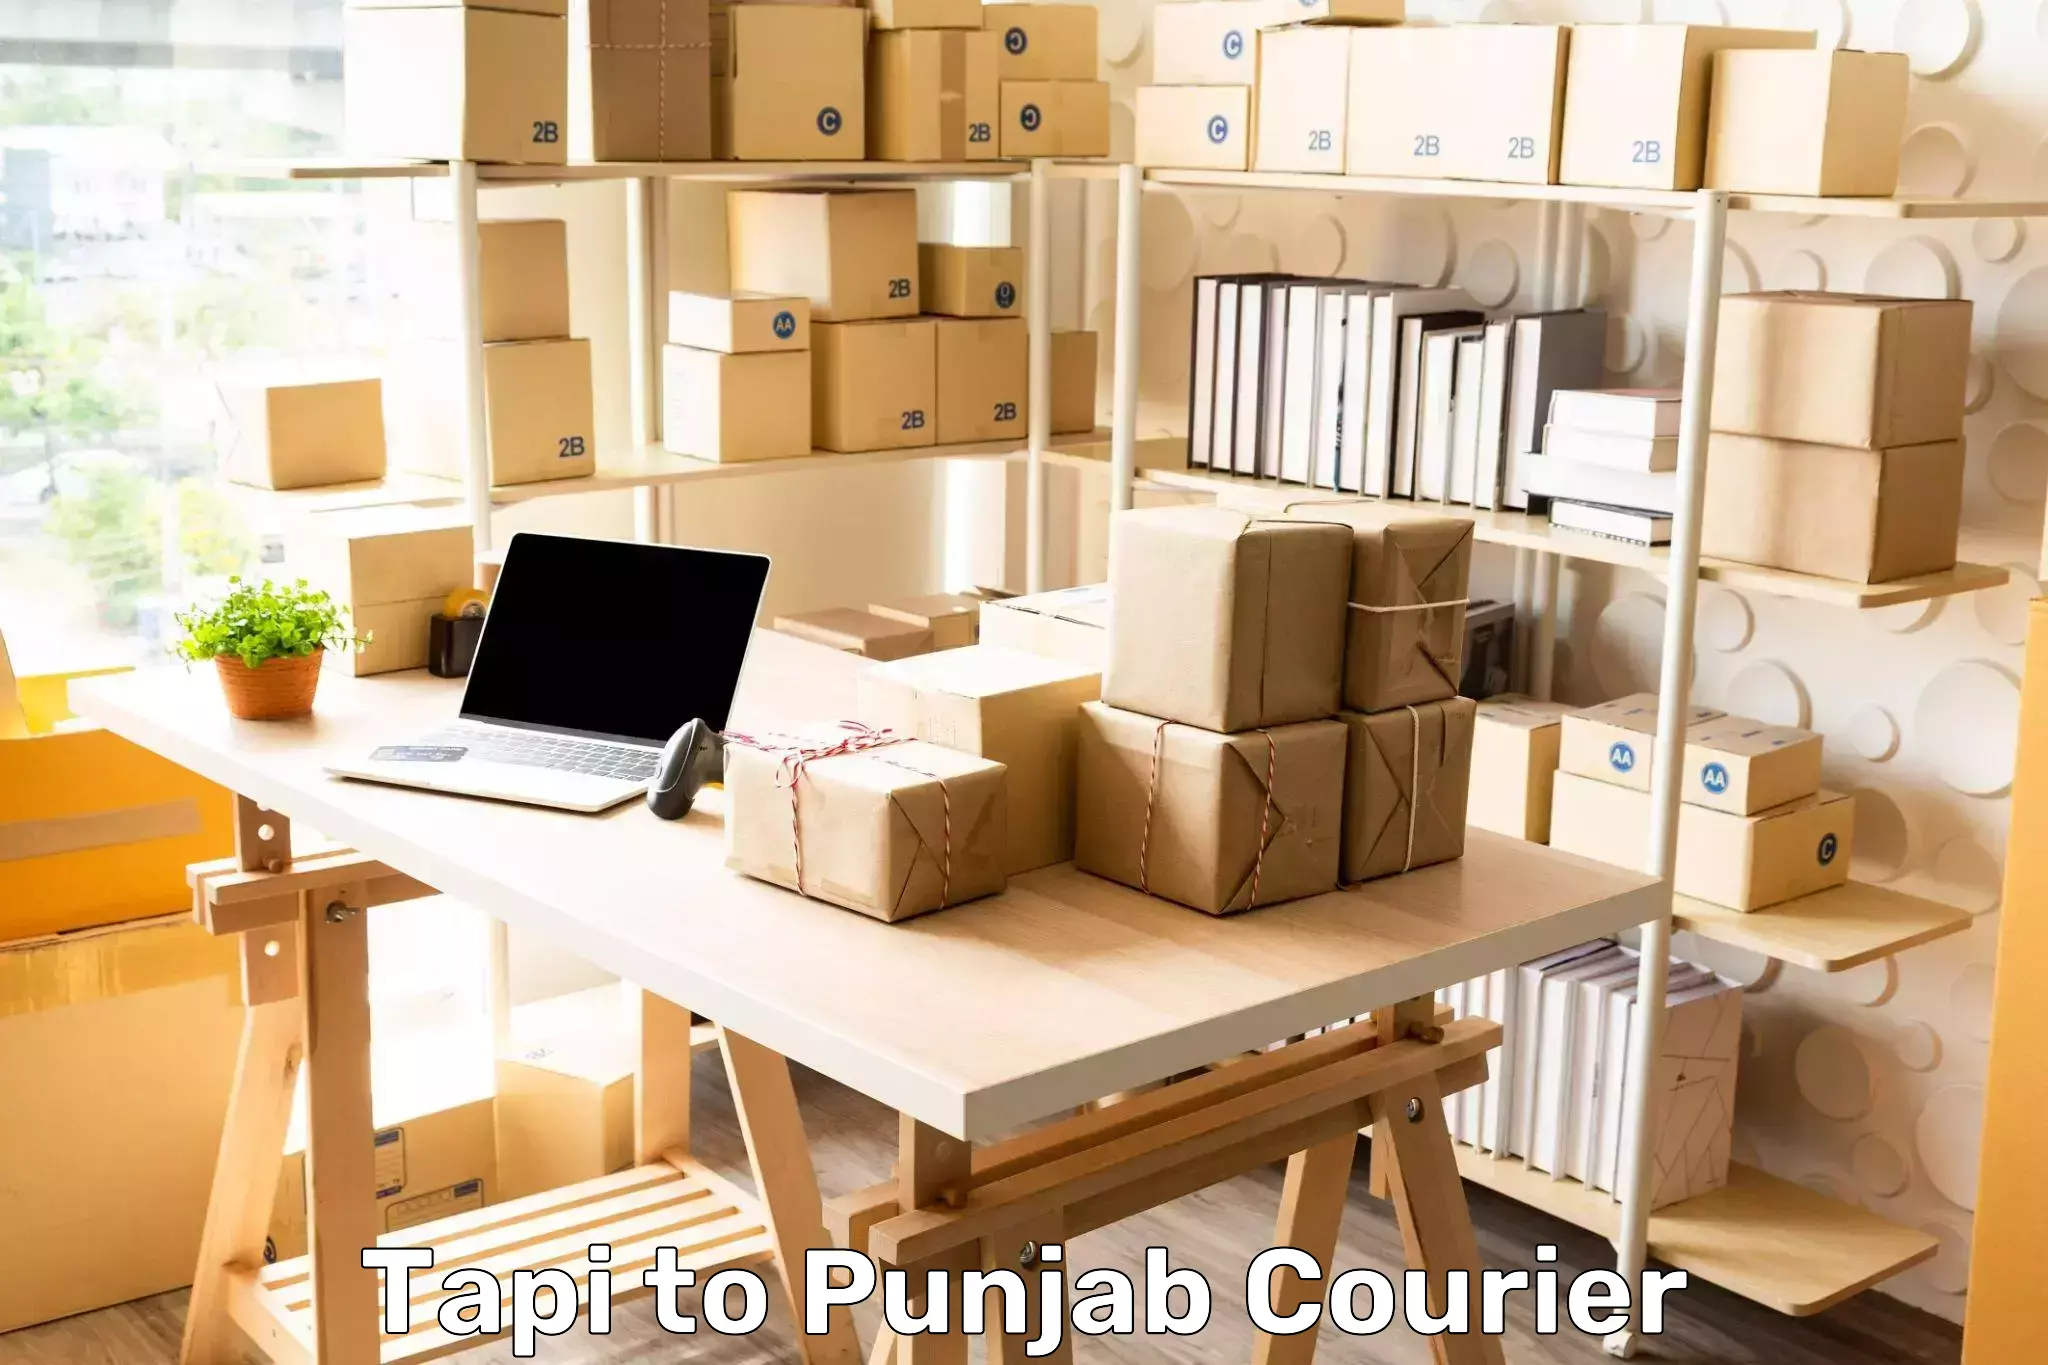 Shipping and handling Tapi to Punjab